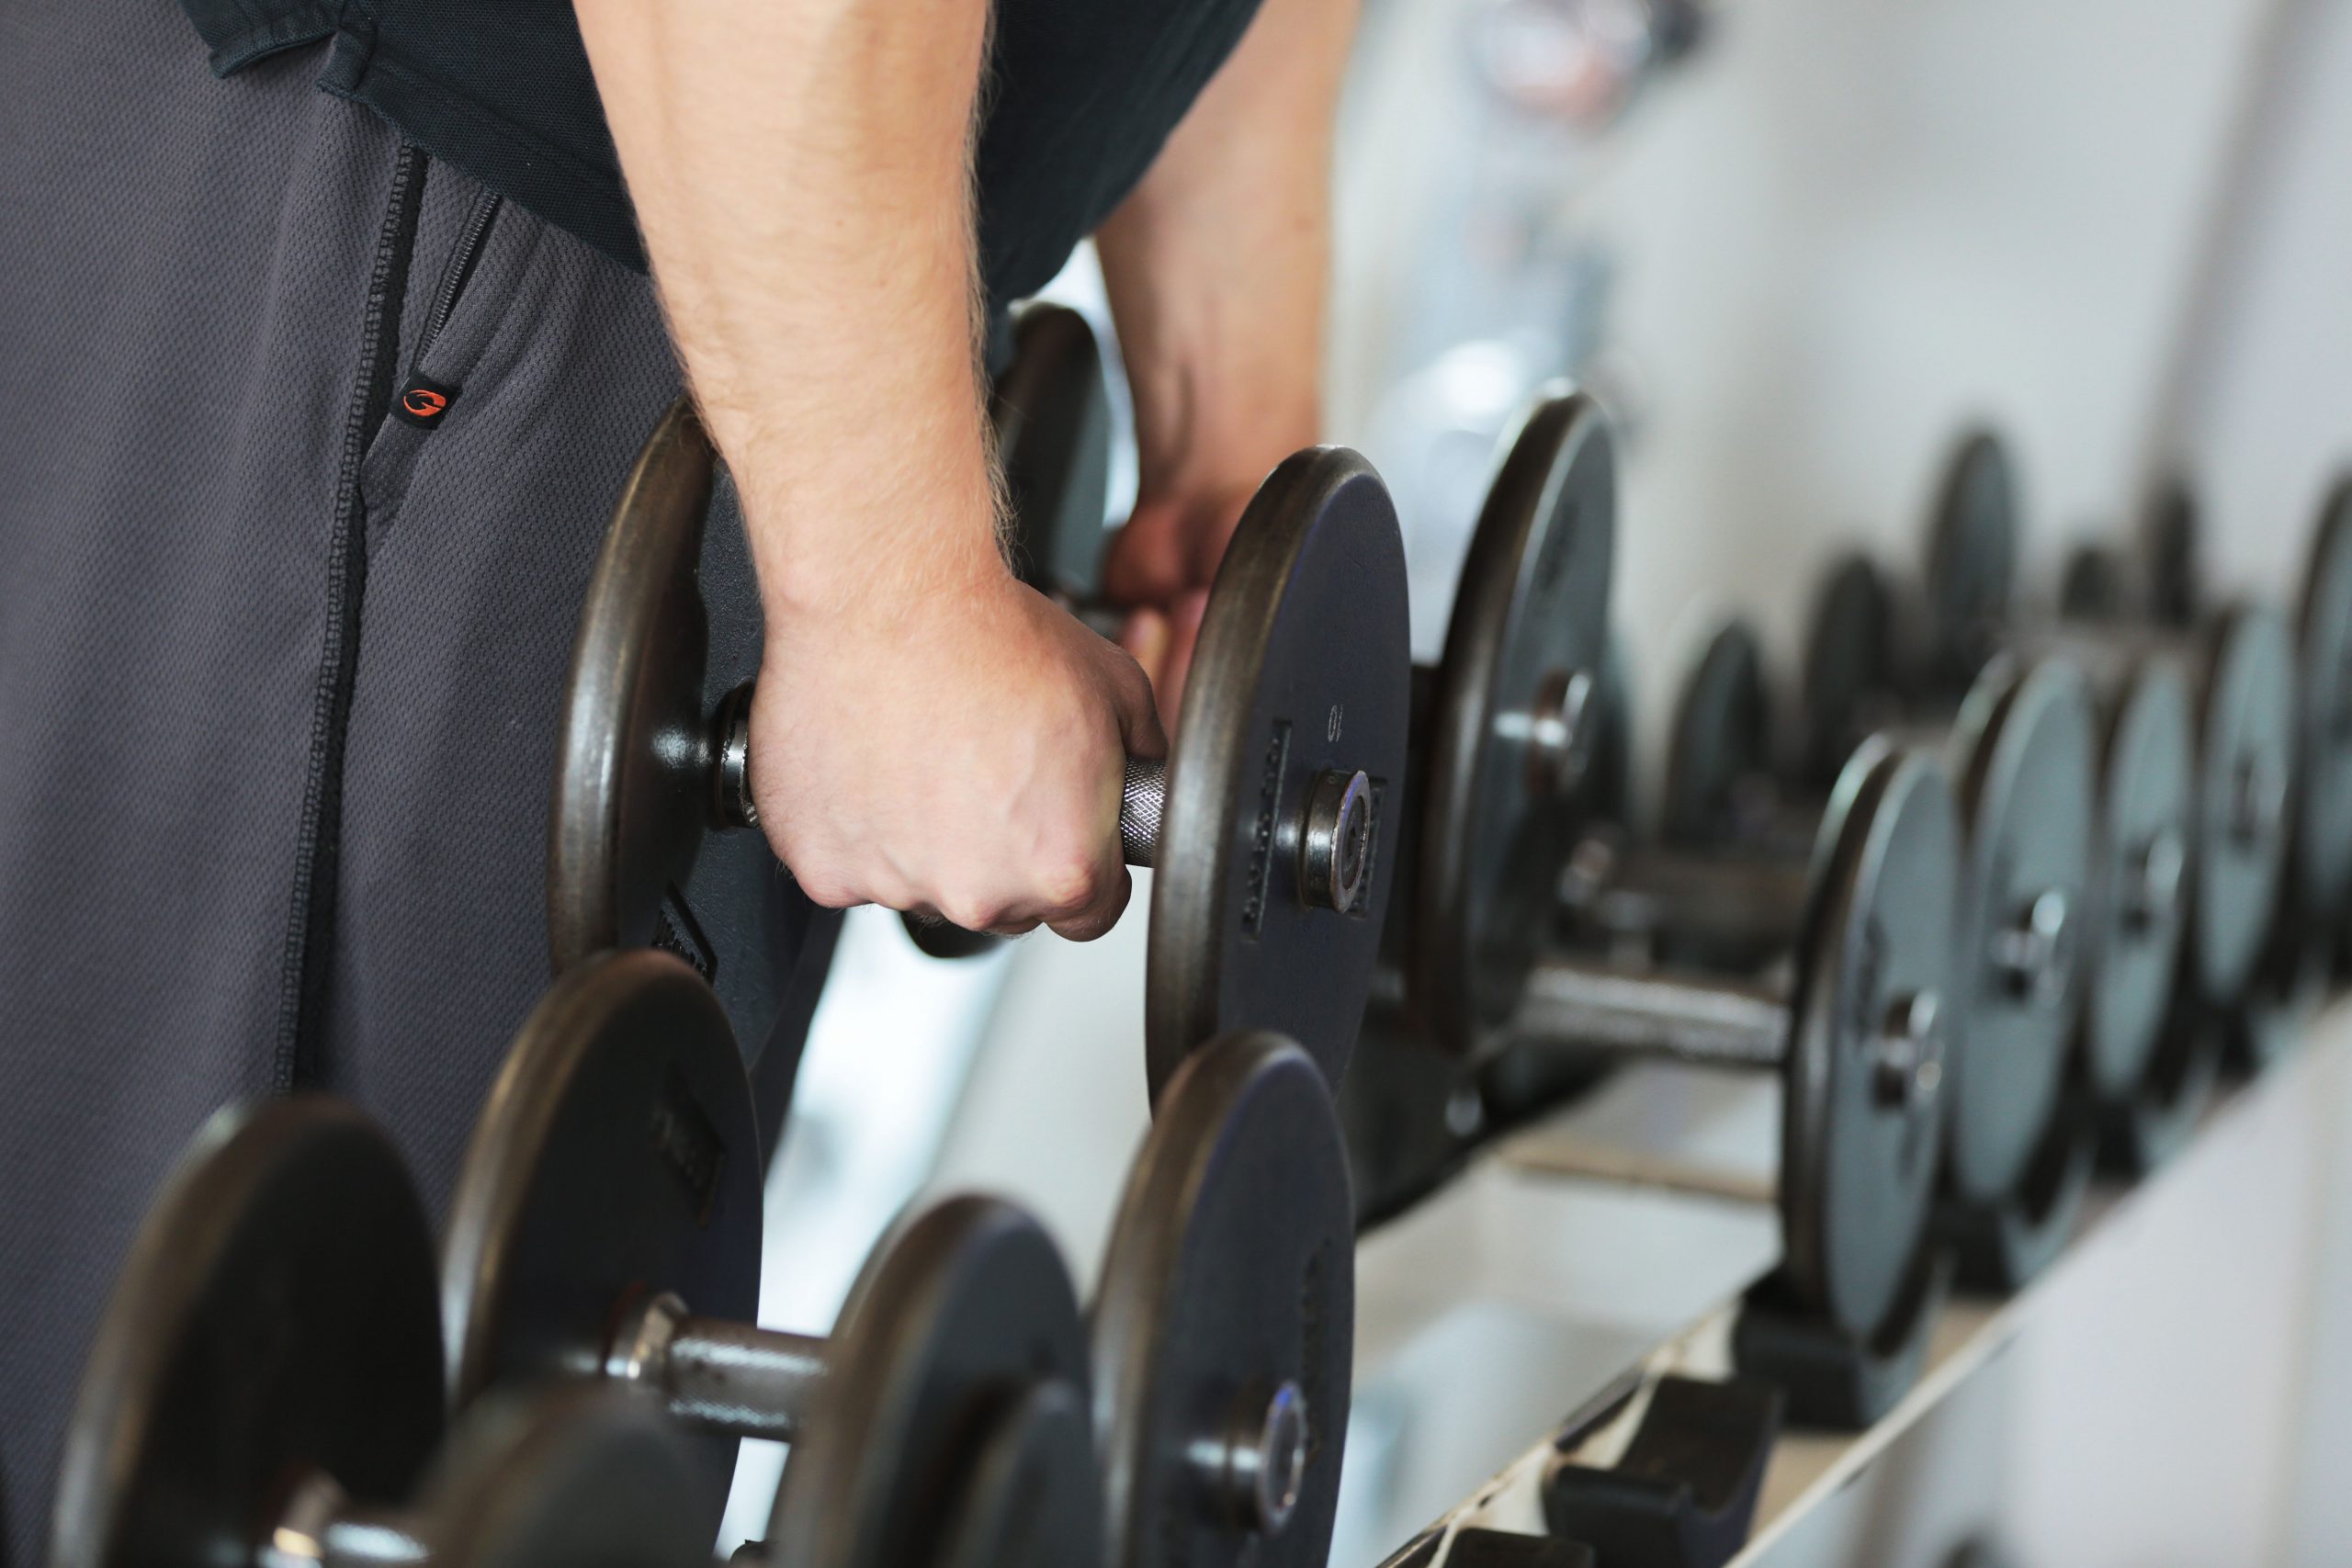 Neuanmeldungen in Fitnessstudios gehen zu Jahresbeginn stark zurück. (Symbolbild)